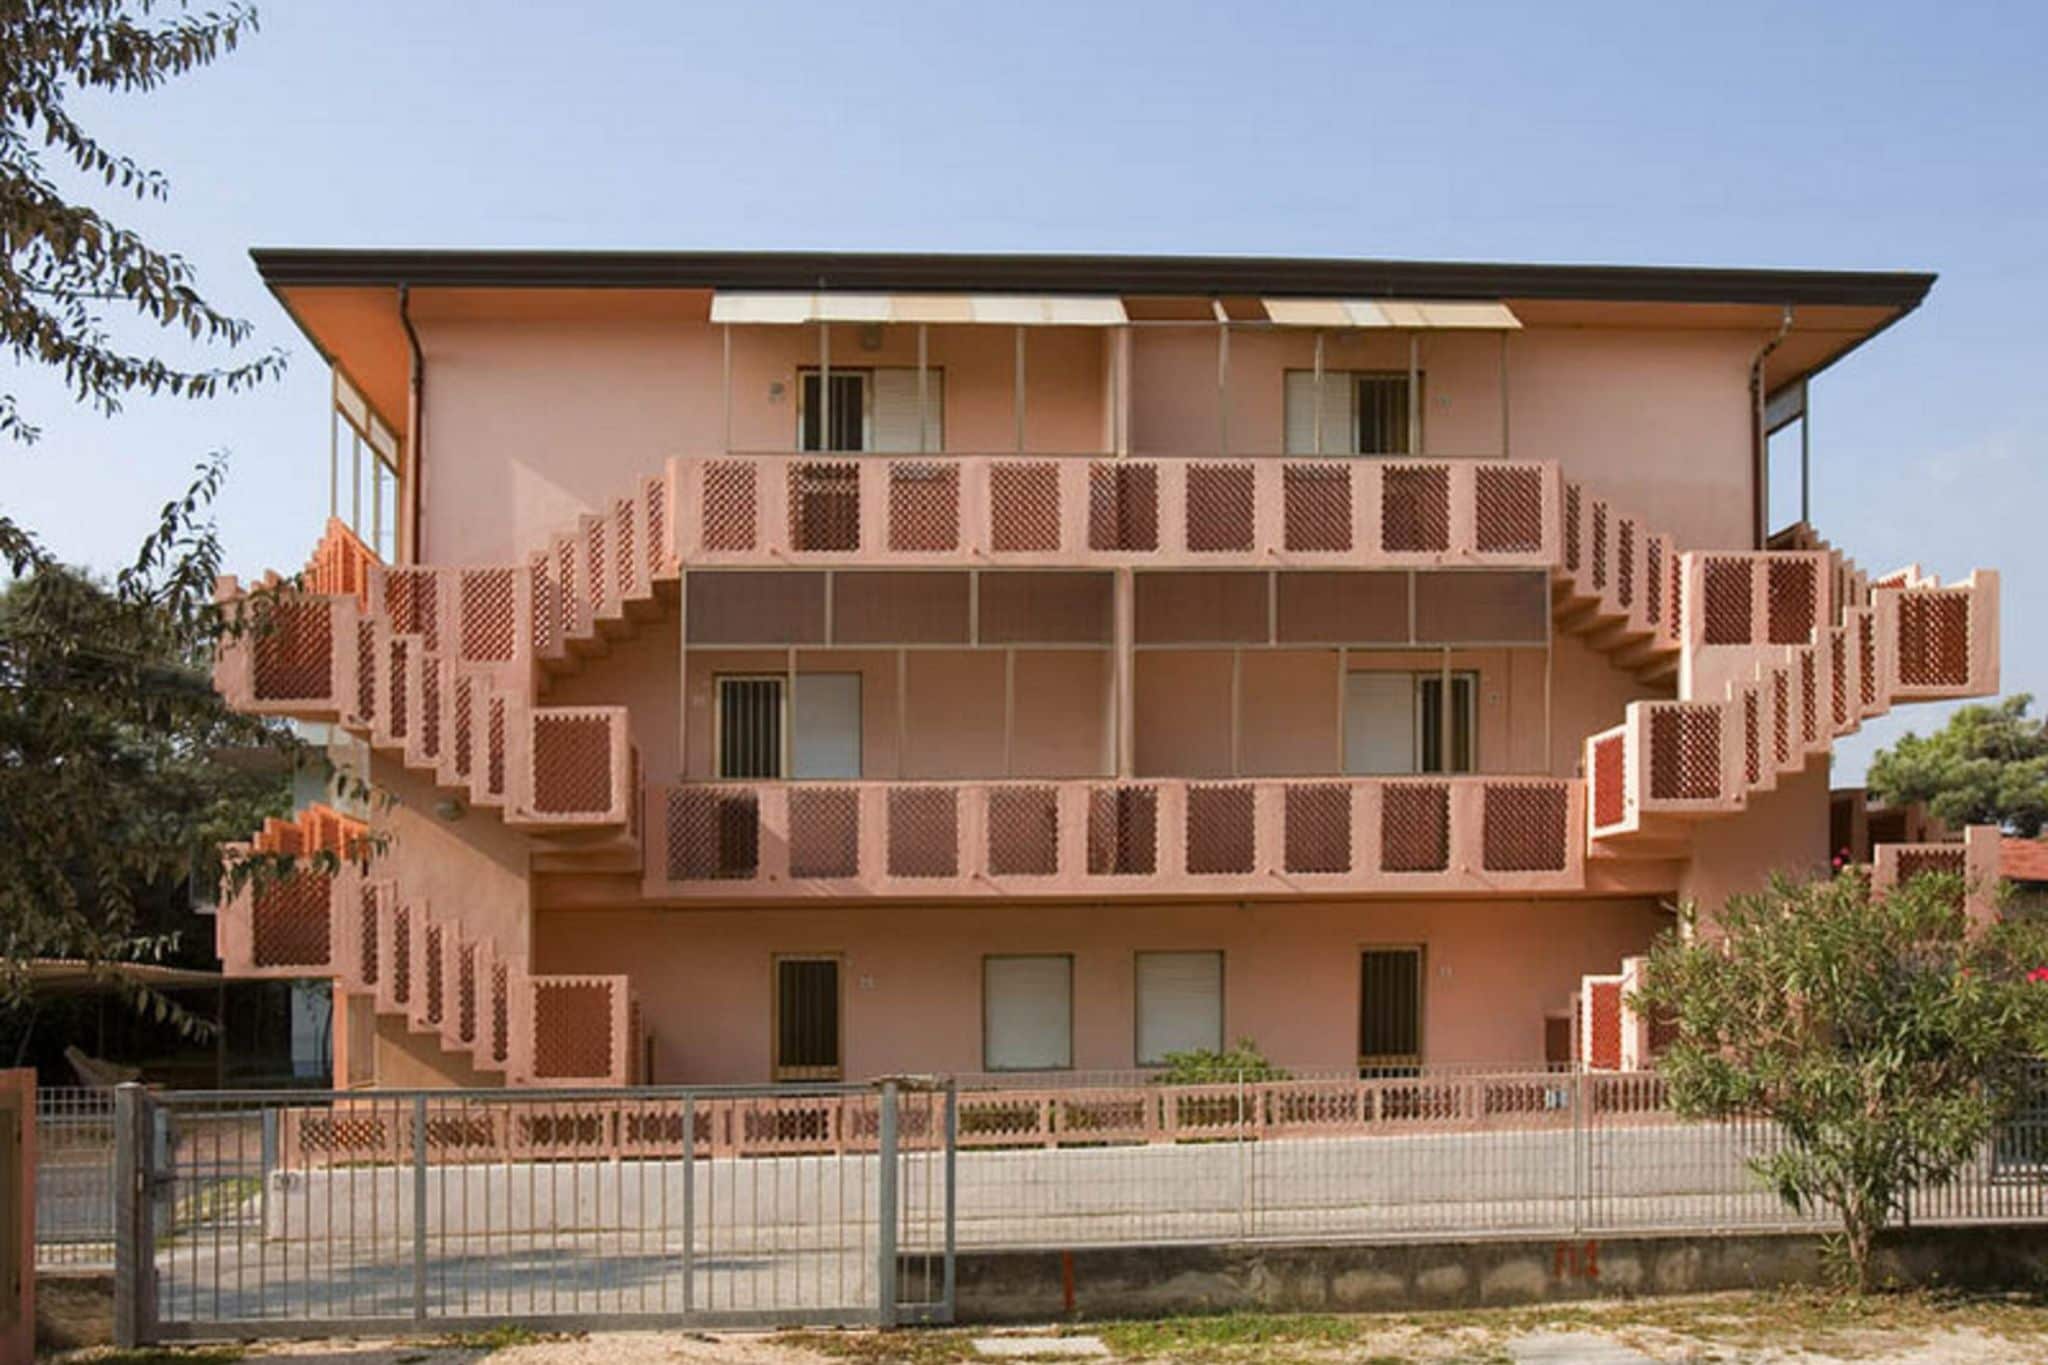 Fraai appartement, vlakbij zee, in Rosolina Mare, vlakbij Venetië.